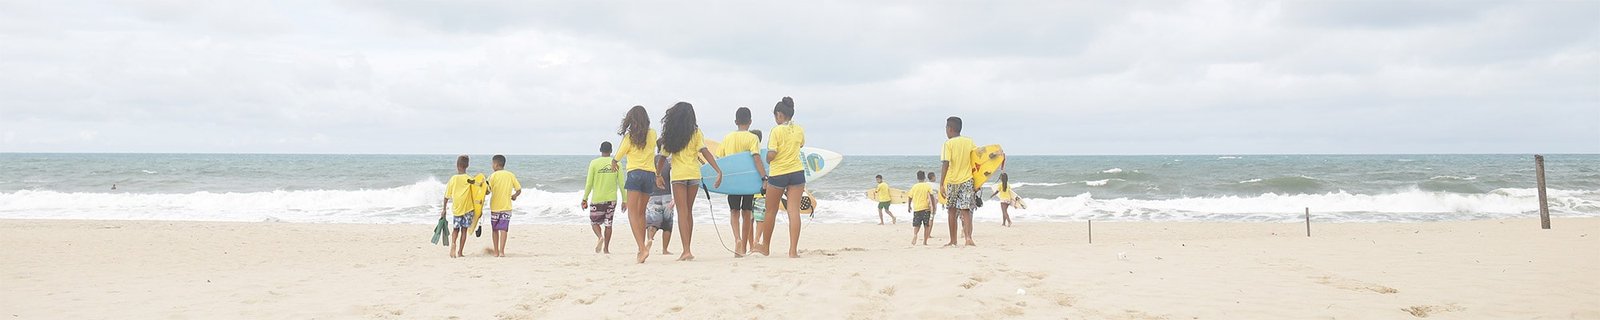 IPOM - Crianças na Praia